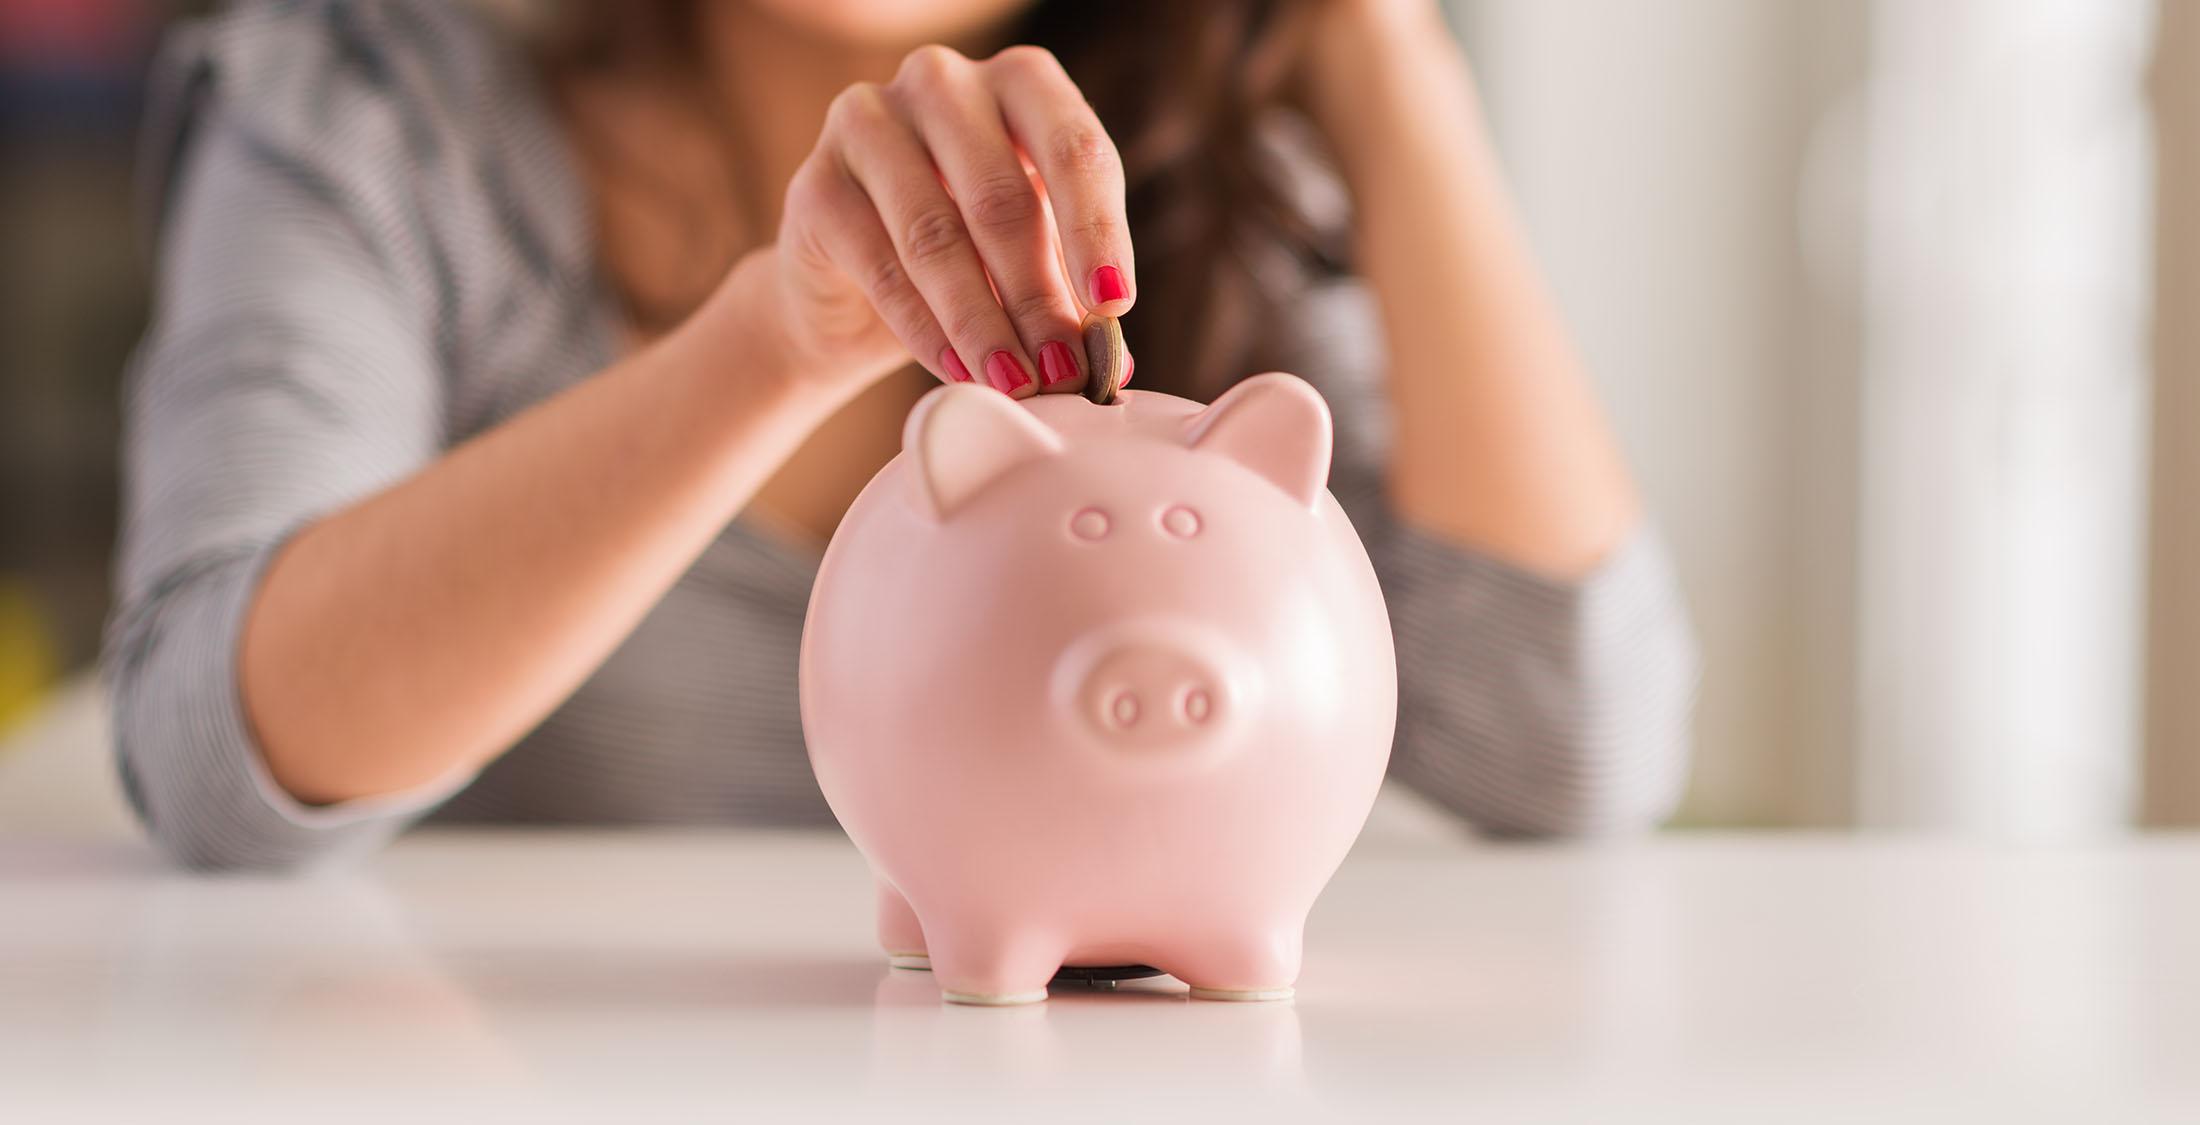 woman insert coin into piggy bank